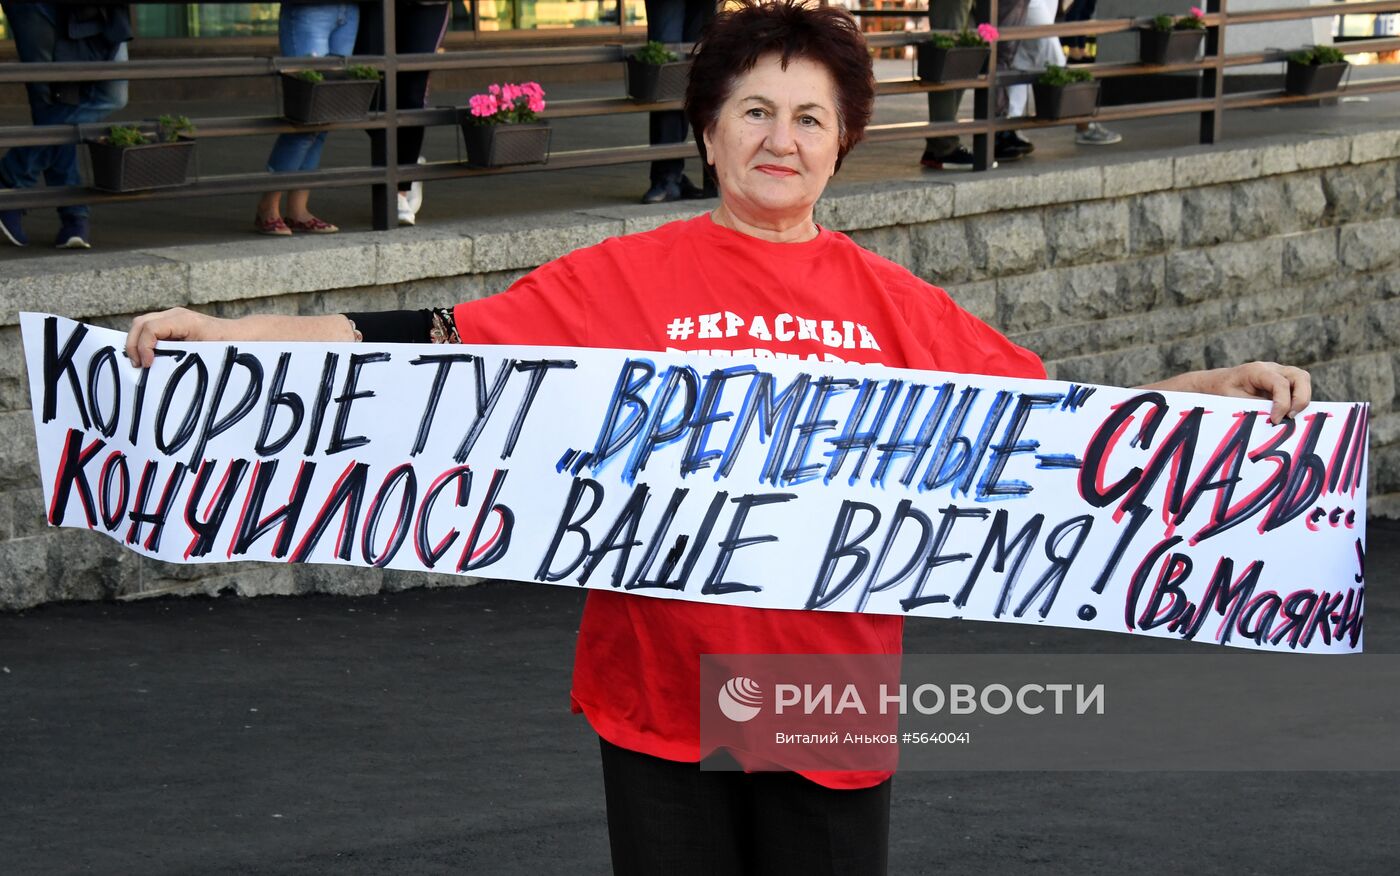 Митинг в поддержку кандидата в губернаторы Приморского края от КПРФ А. Ищенко